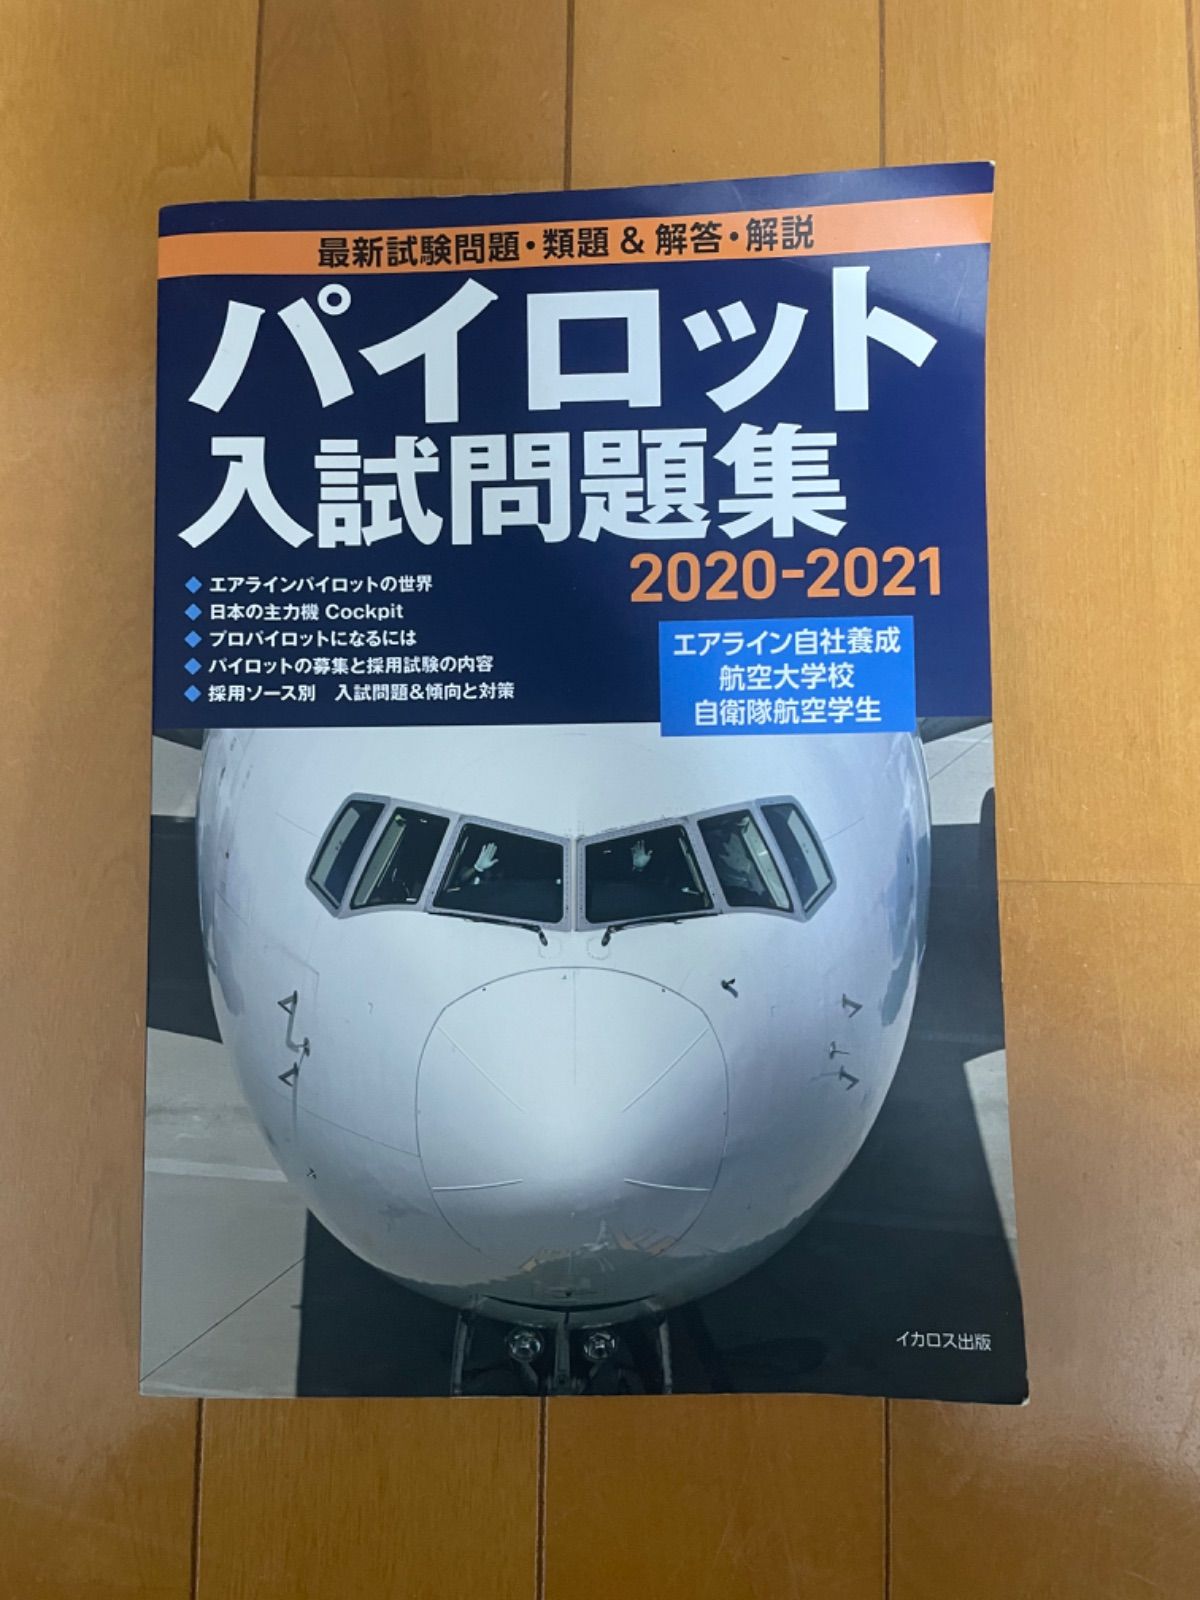 パイロット入試問題集 2020-2021 2018-2019